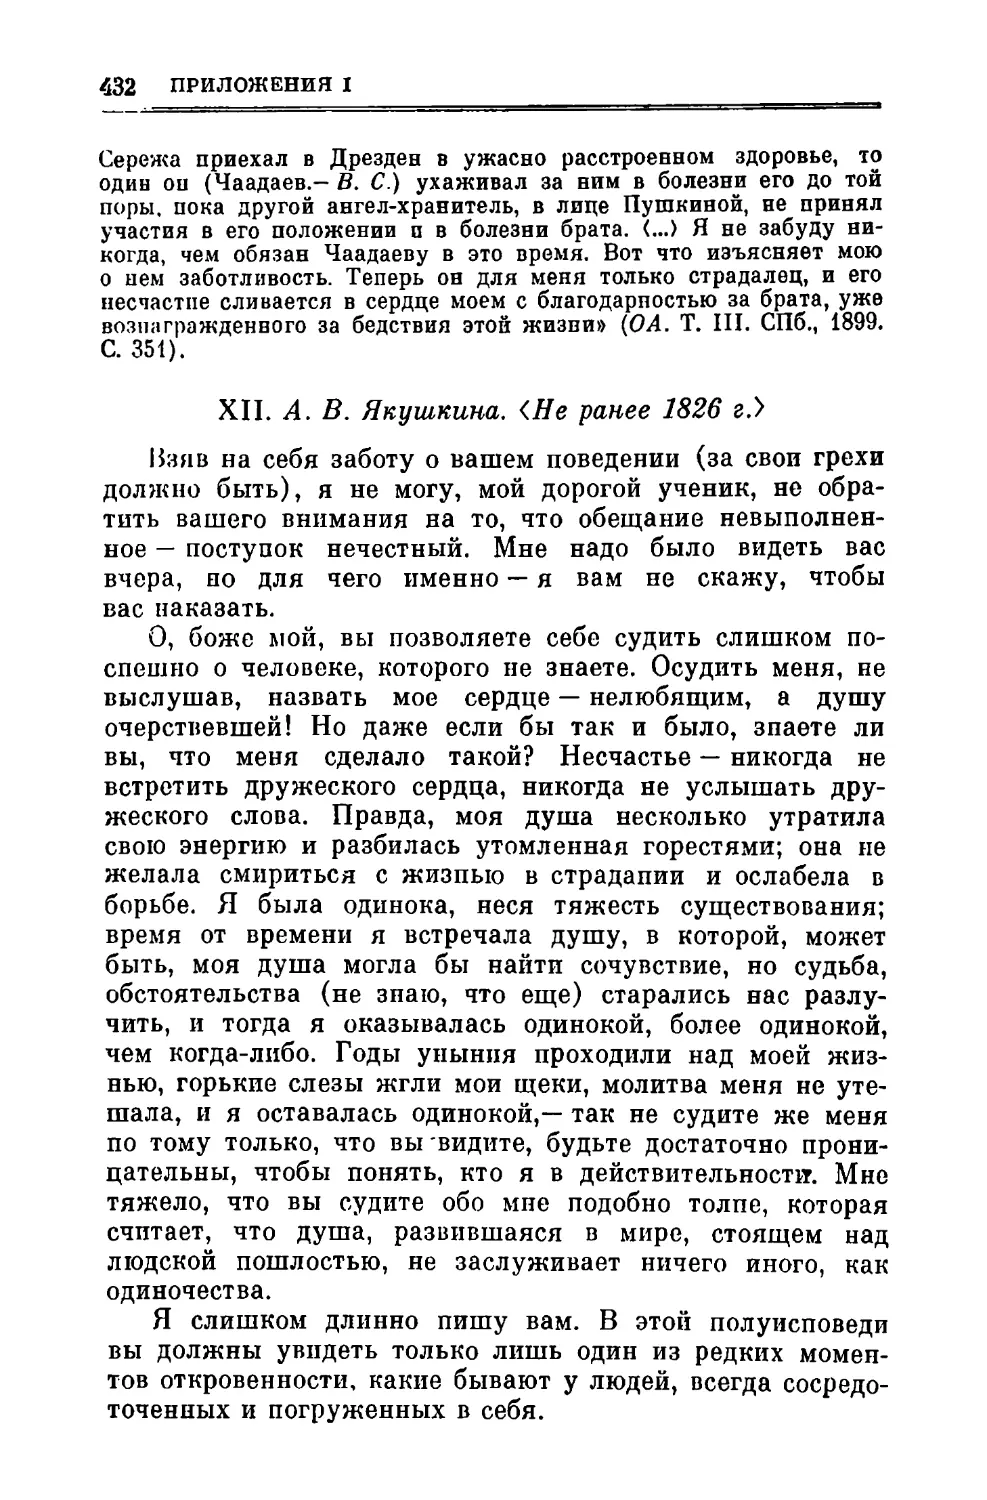 XII. Якушкина A.B. Не ранее 1826